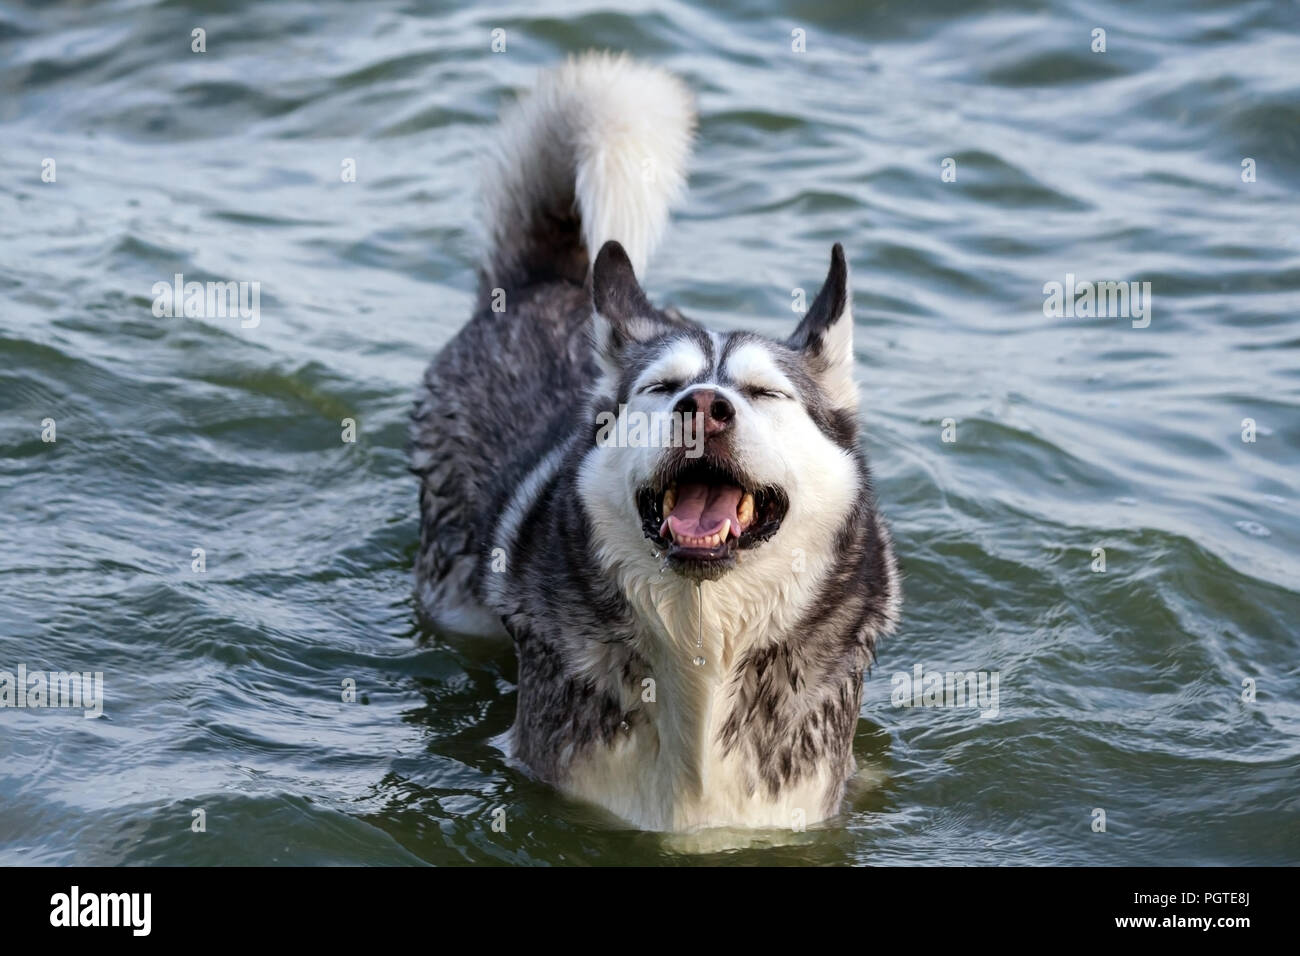 Il ritratto di un cane Alaskan Malamute bagna nel lago, un animale bagnato, gli occhi sono chiusi e la testa è alta, molto lieto e divertente guardare, Foto Stock